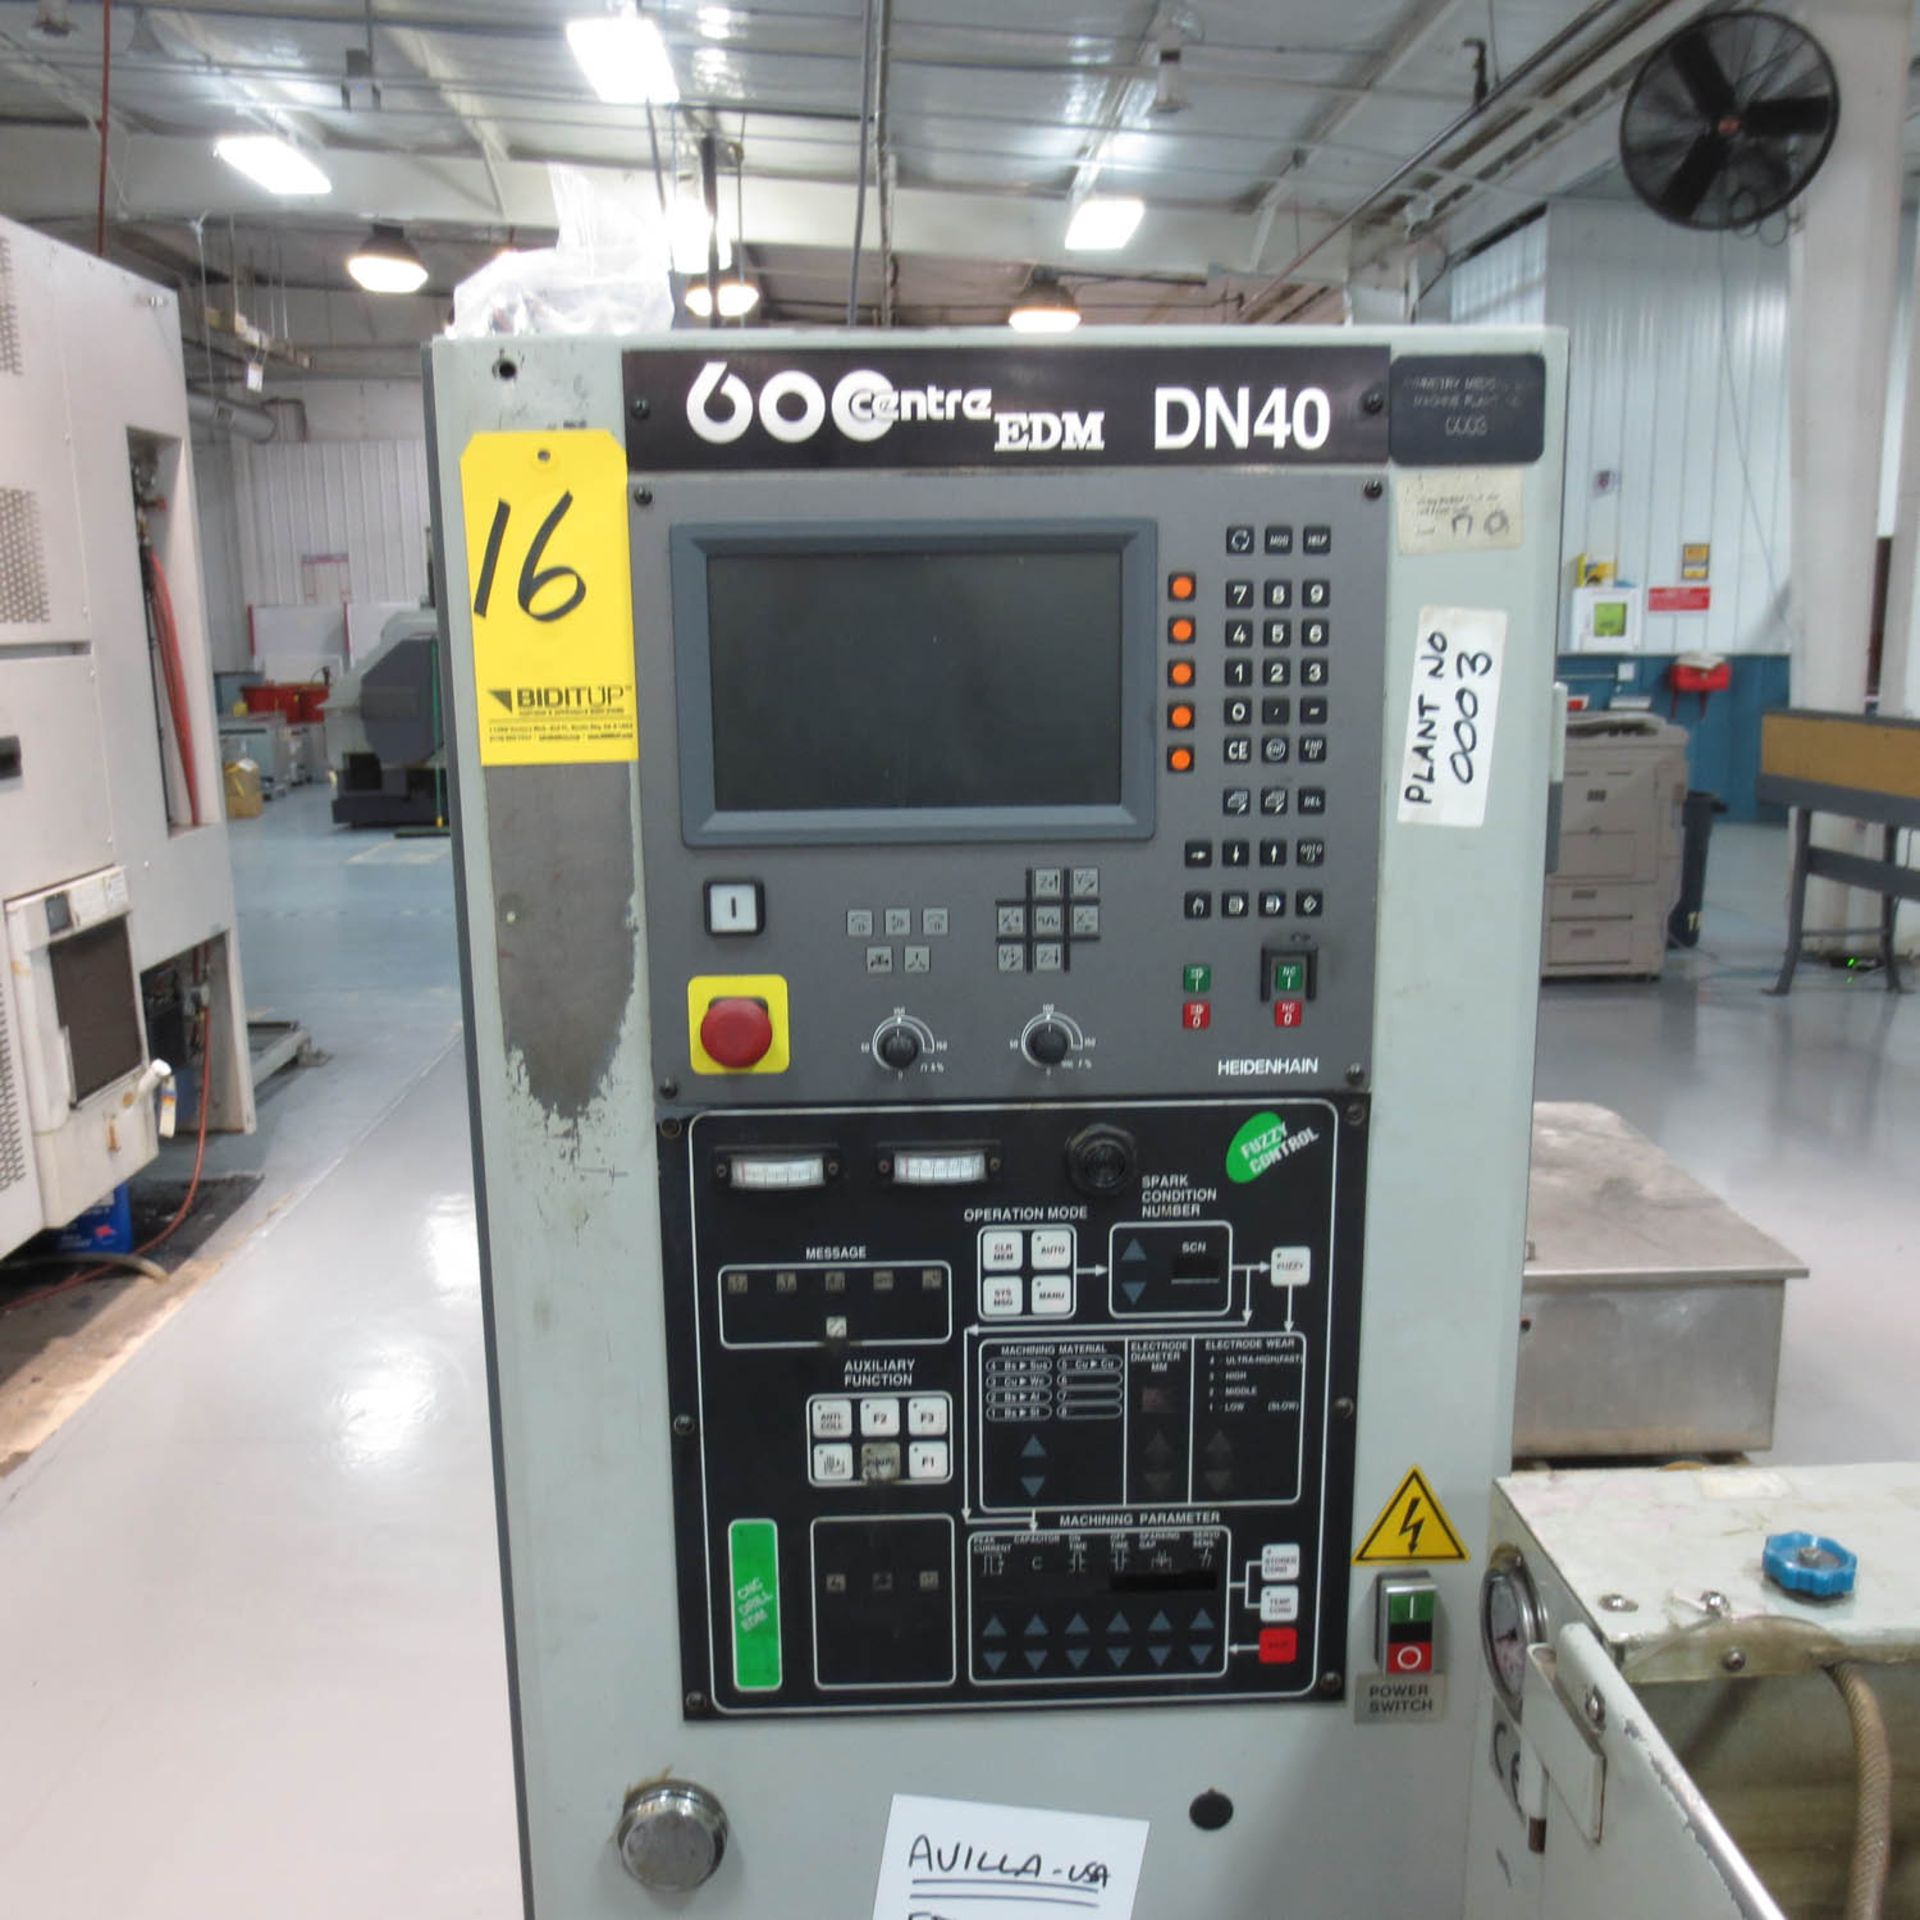 JOEMARS MDL. DNC-42 EDM MACHINE, DN40 CONTROLS, 24'' X 15'' TABLE, 415V 3 PH, S/N:9102639 - Image 2 of 4